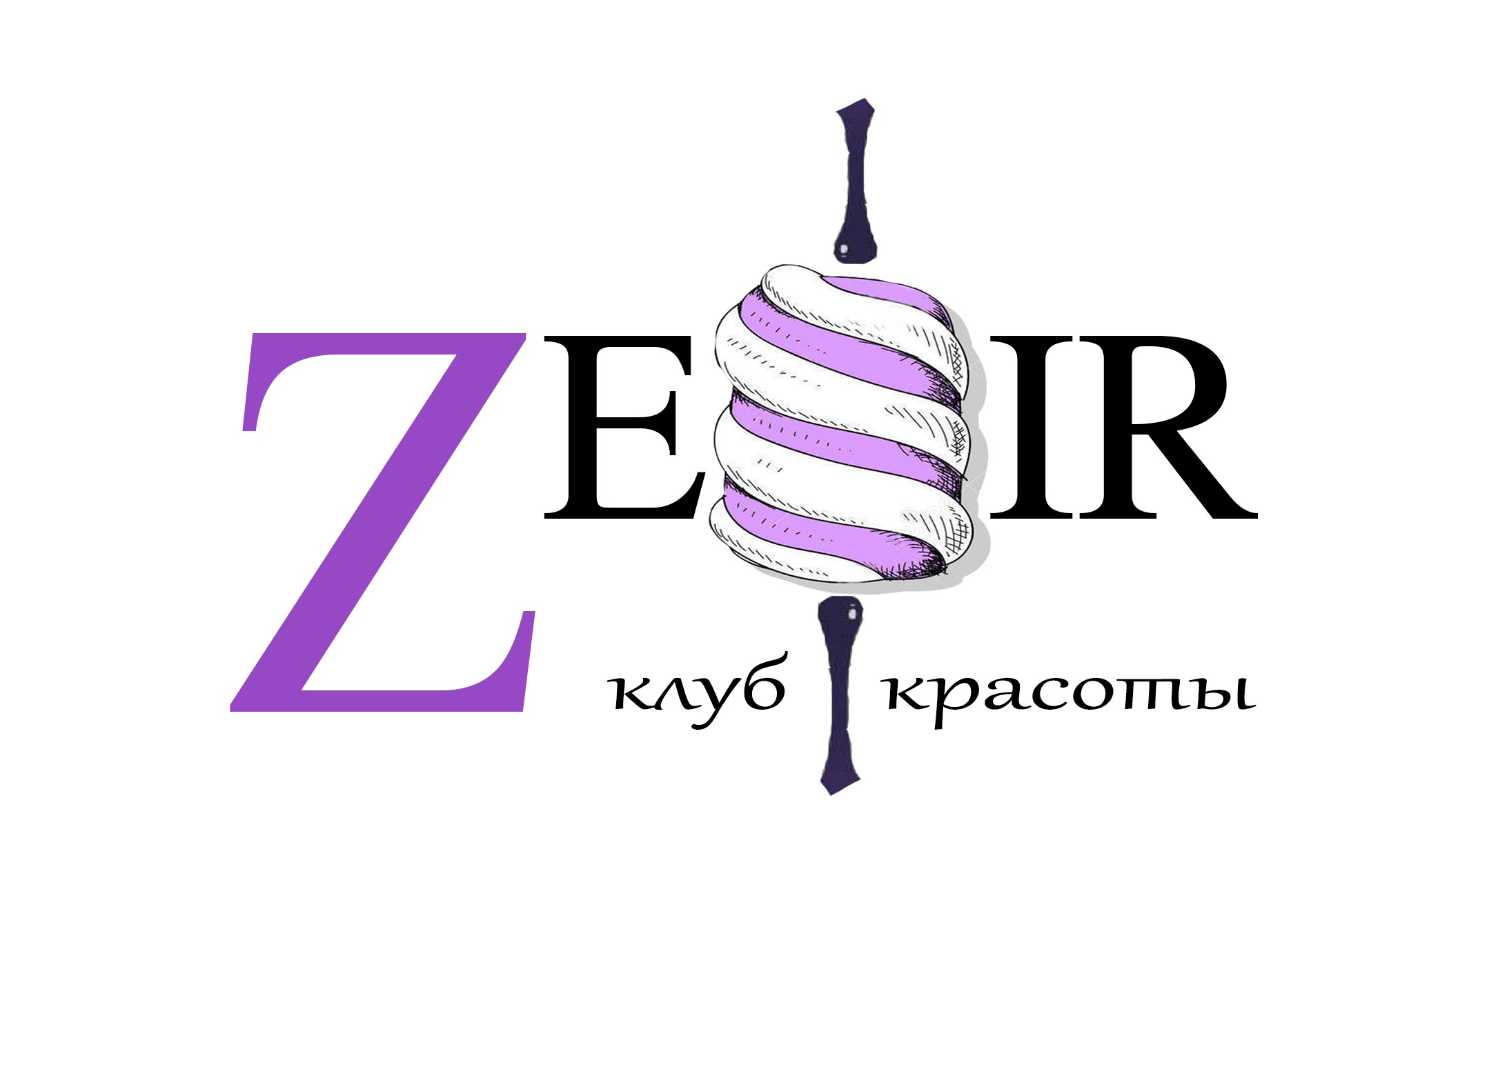 zefir_obn